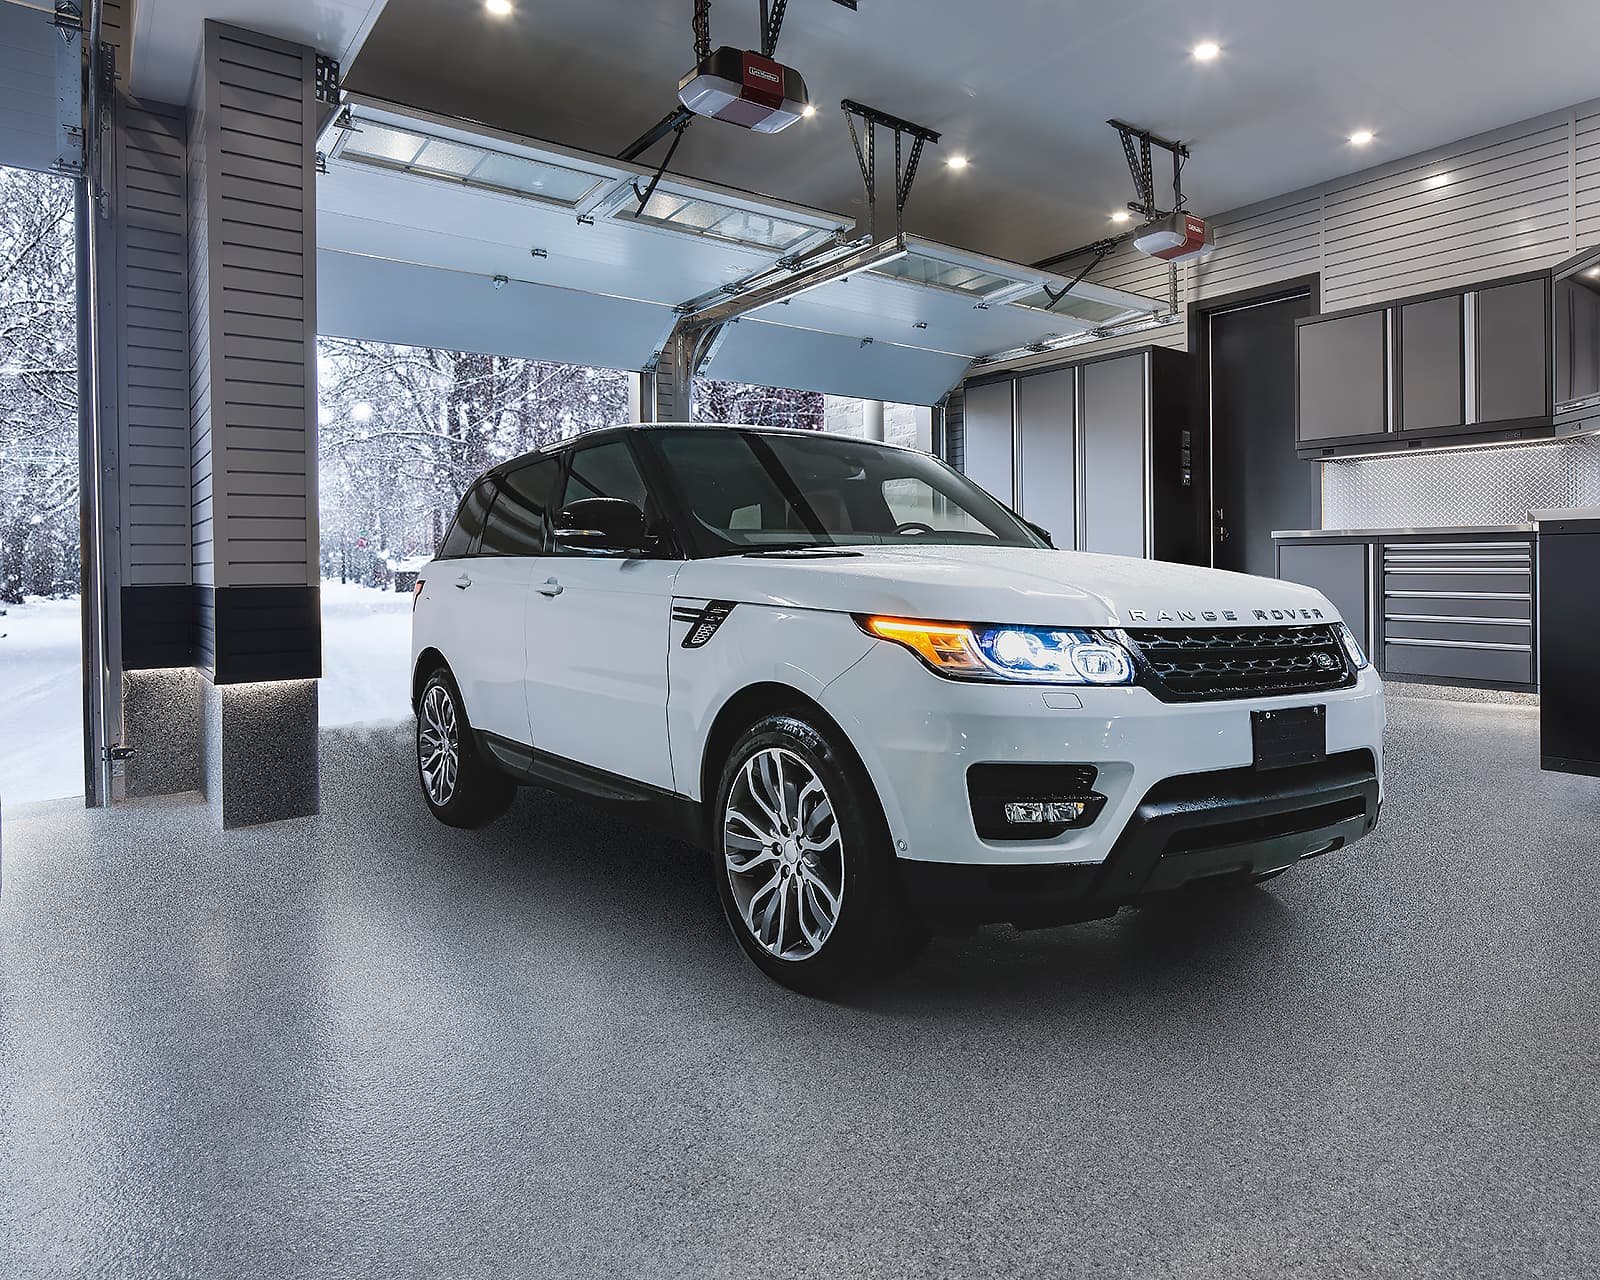 white Range Rover on new garage floor coating in winter